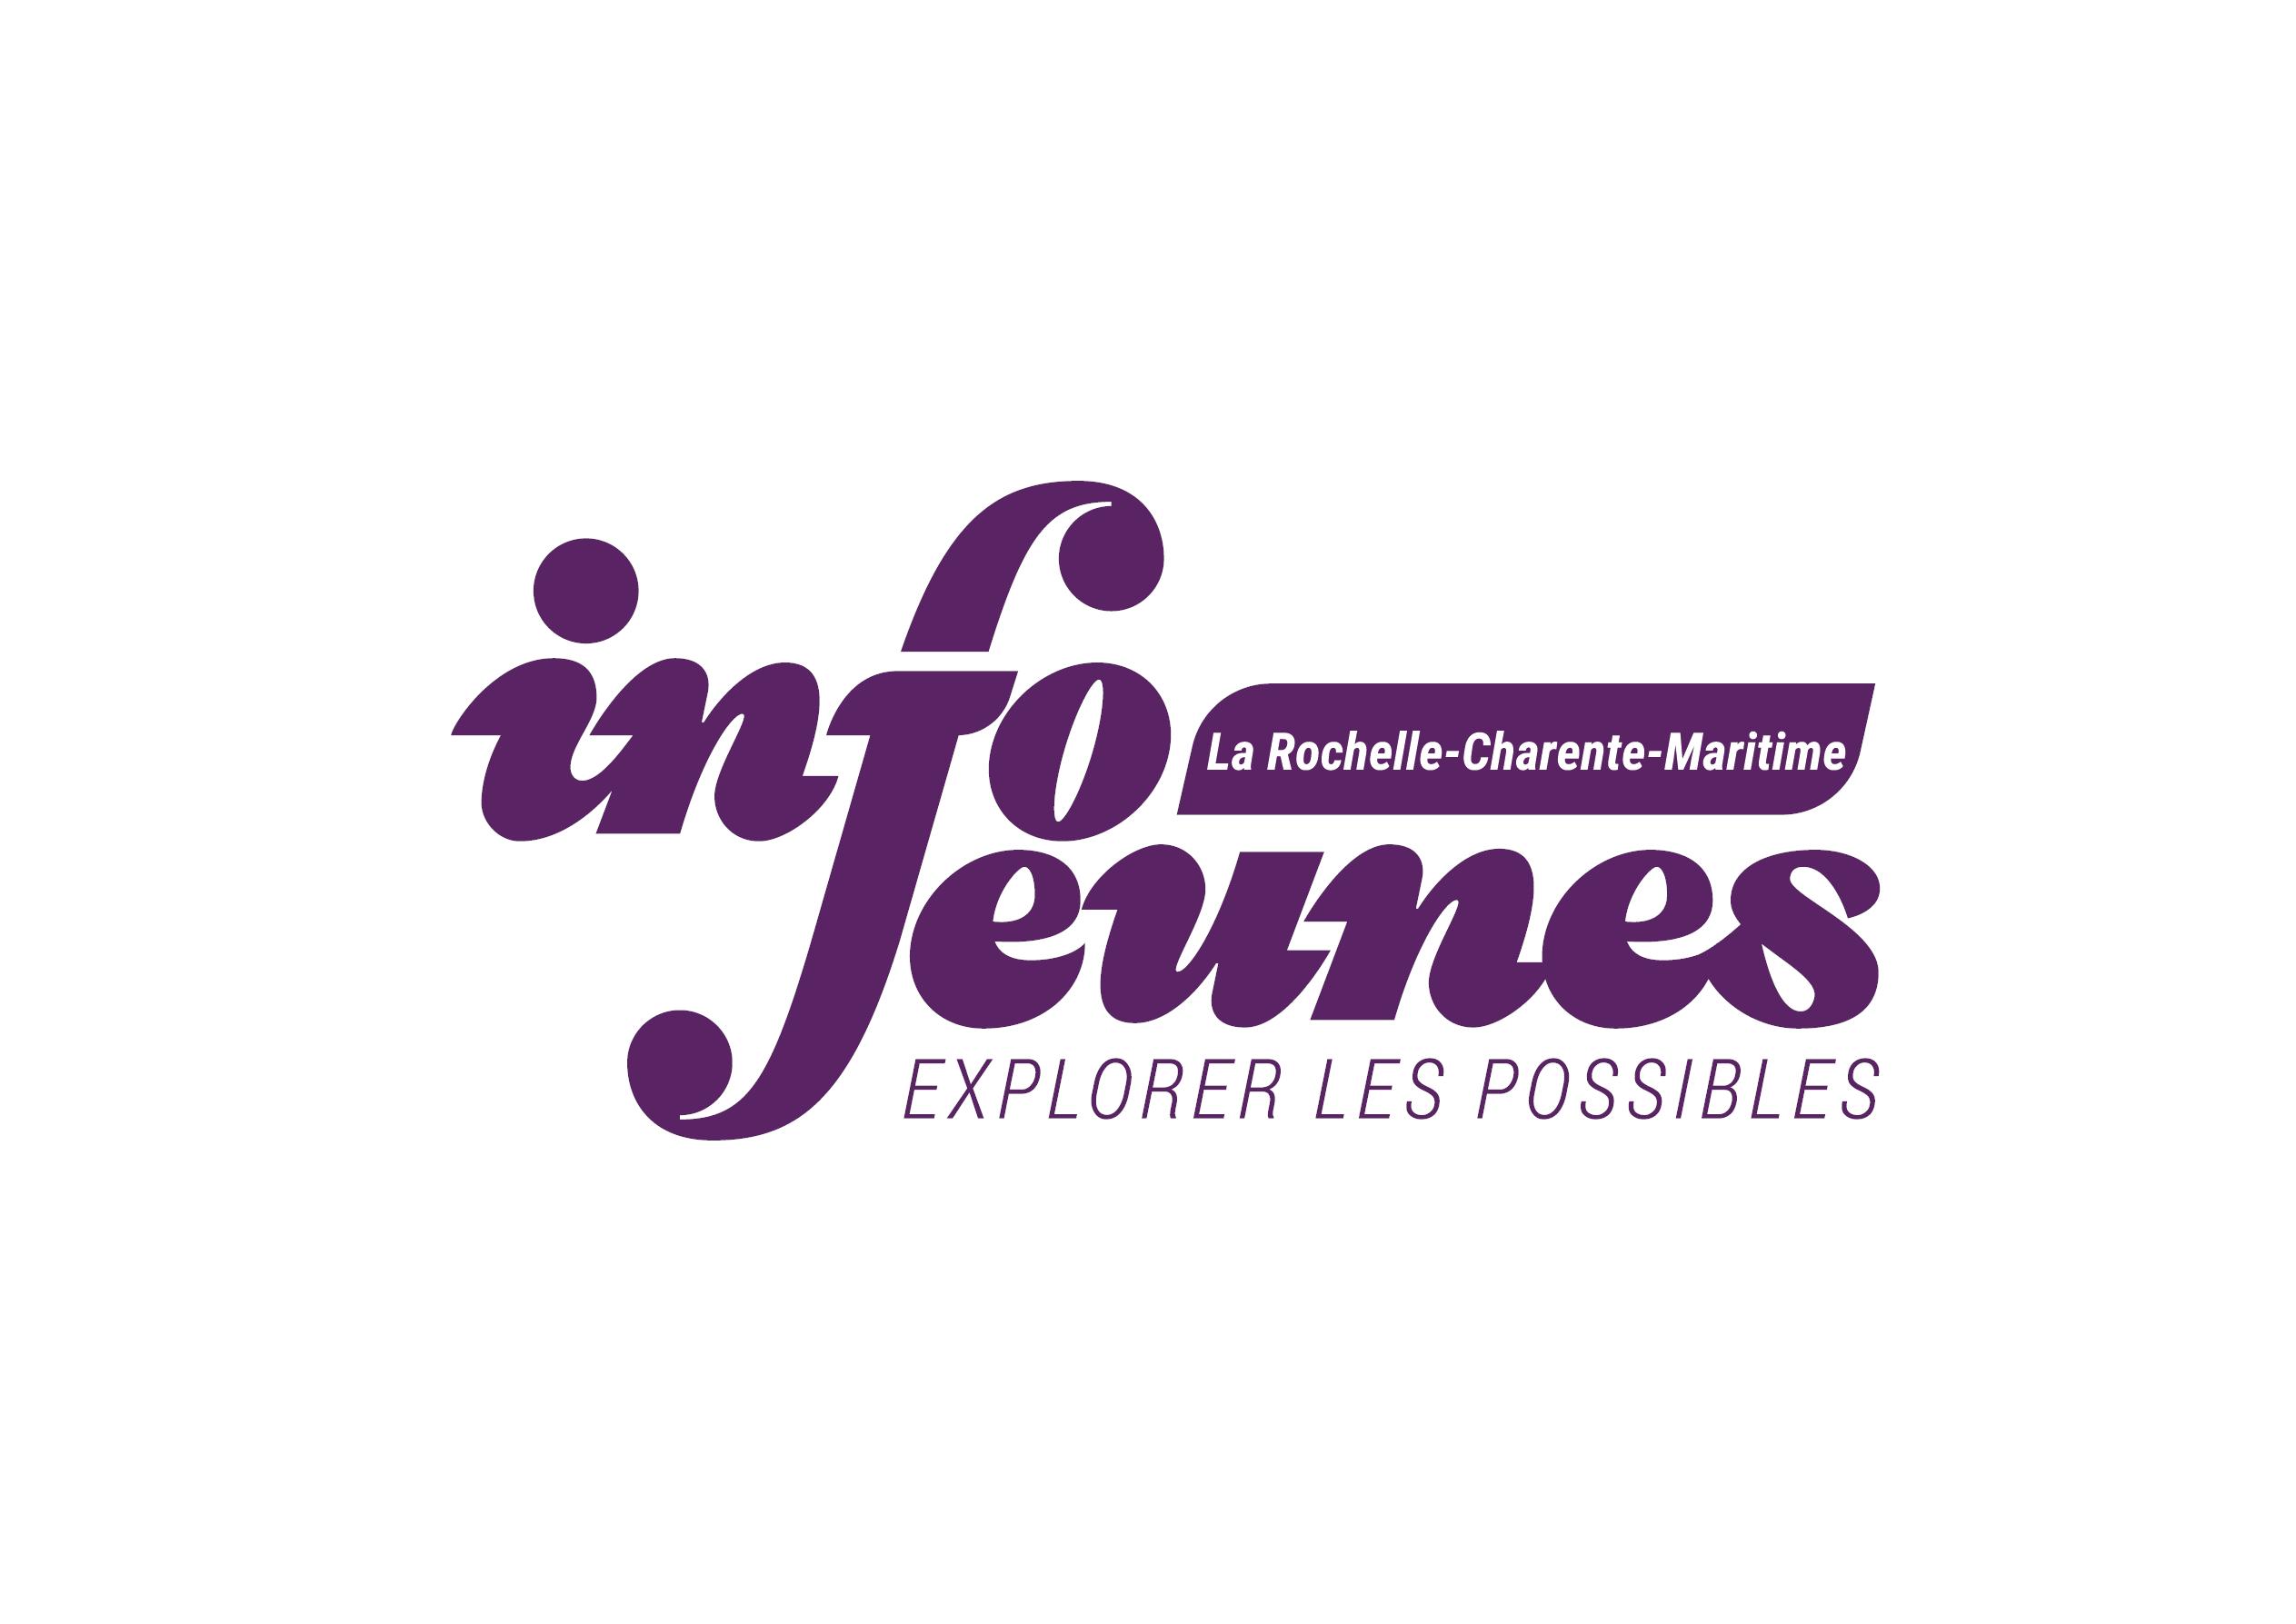 CDIJ - Info Jeunes La Rochelle Charente-Maritime